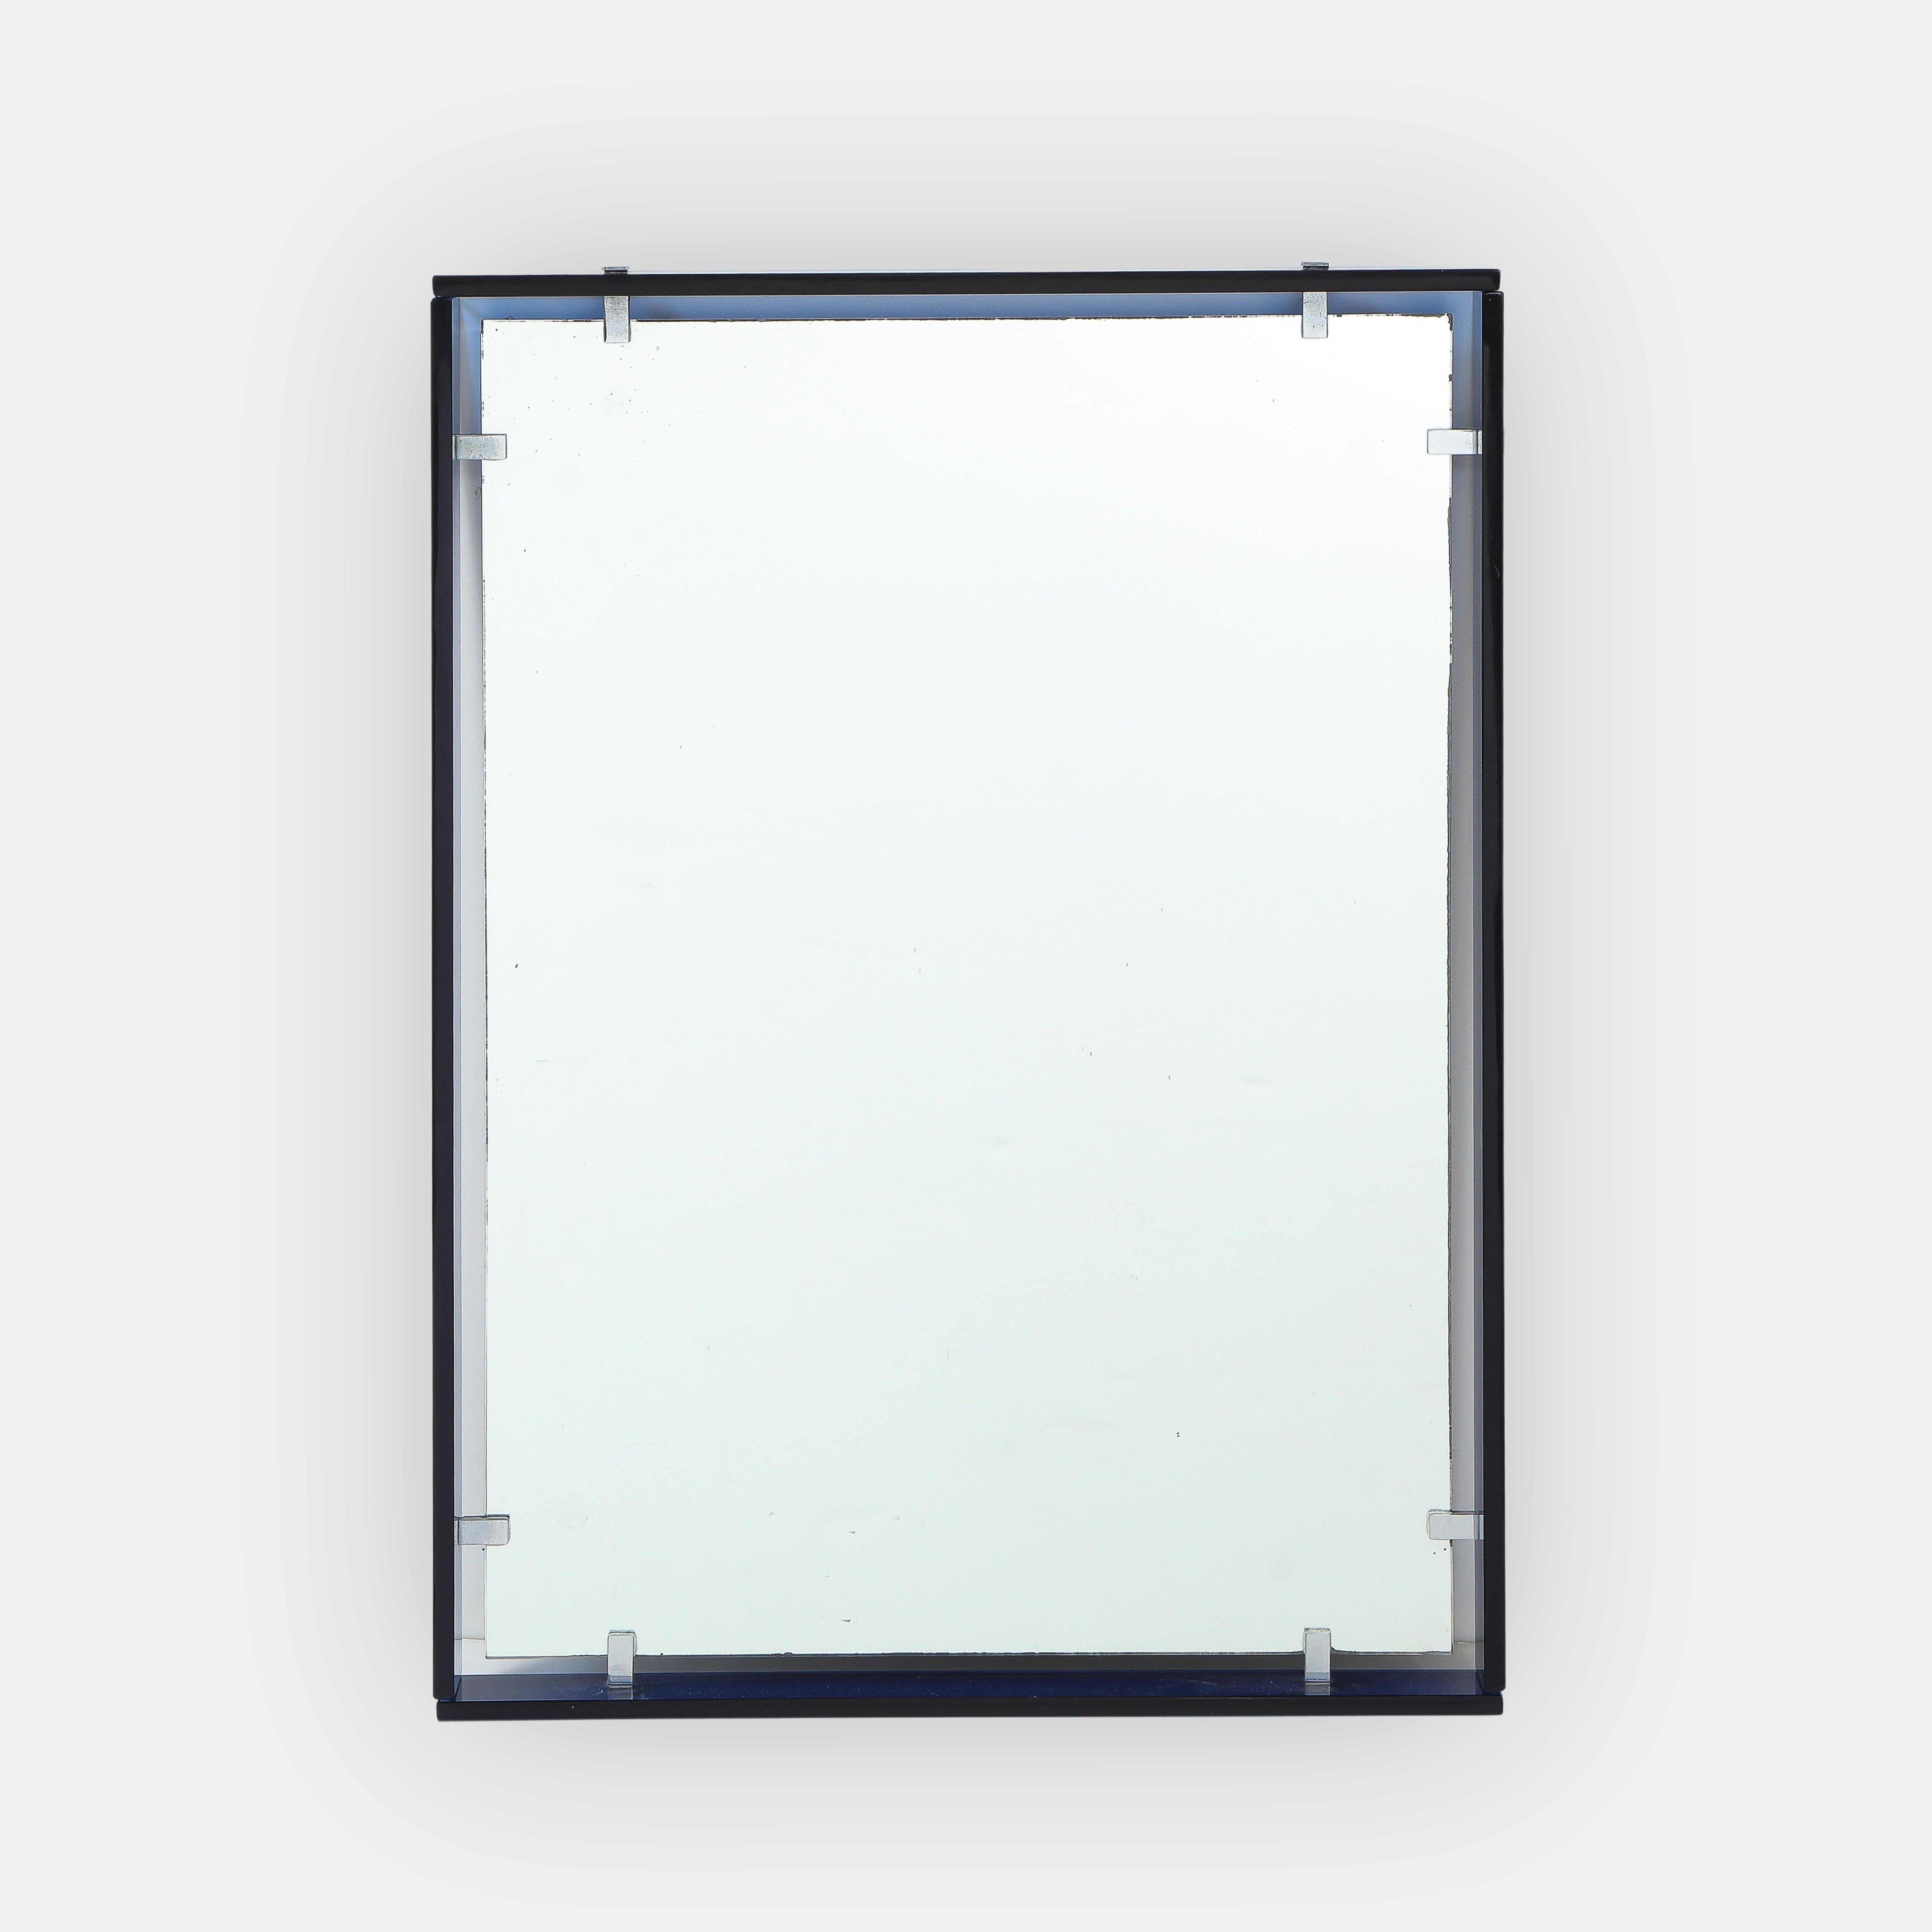 Italian Max Ingrand for Fontana Arte Modernist Rectangular Blue Mirror Model 2014 For Sale